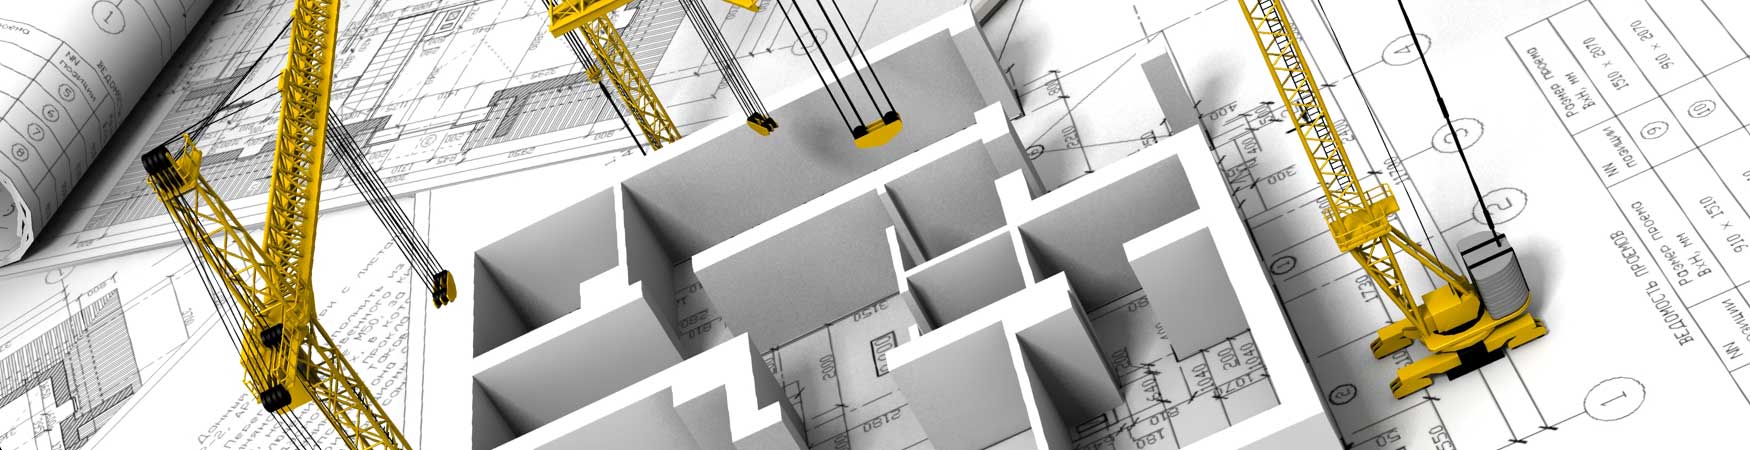 Проектирование и дизайн интерьера в ArchiCAD